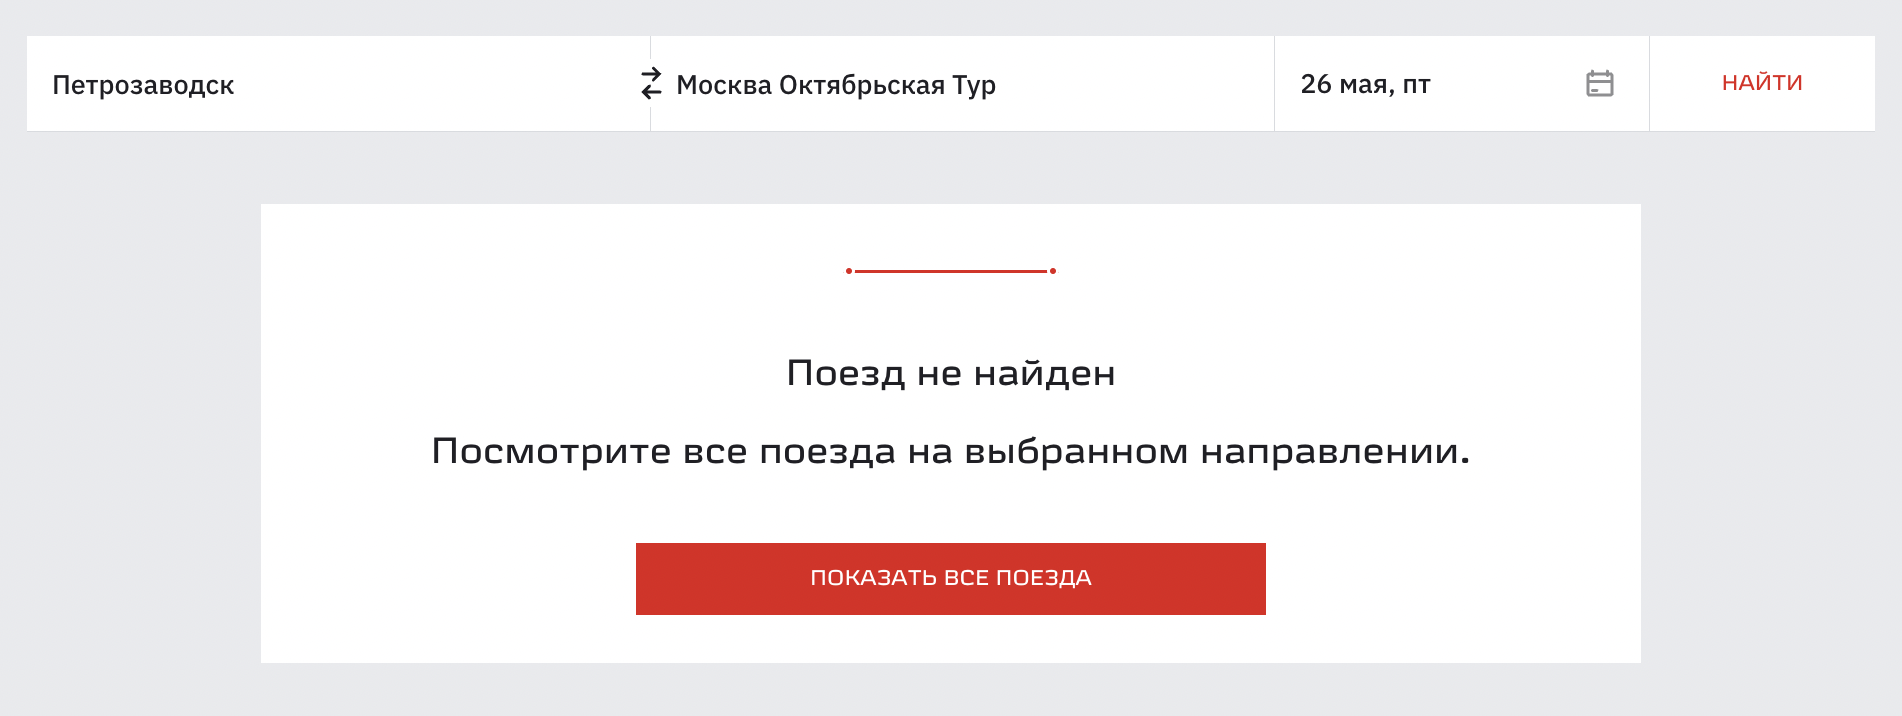 Подсесть в туристический поезд по пути не получится: билеты на часть маршрута не продают. Источник: rzd.ru